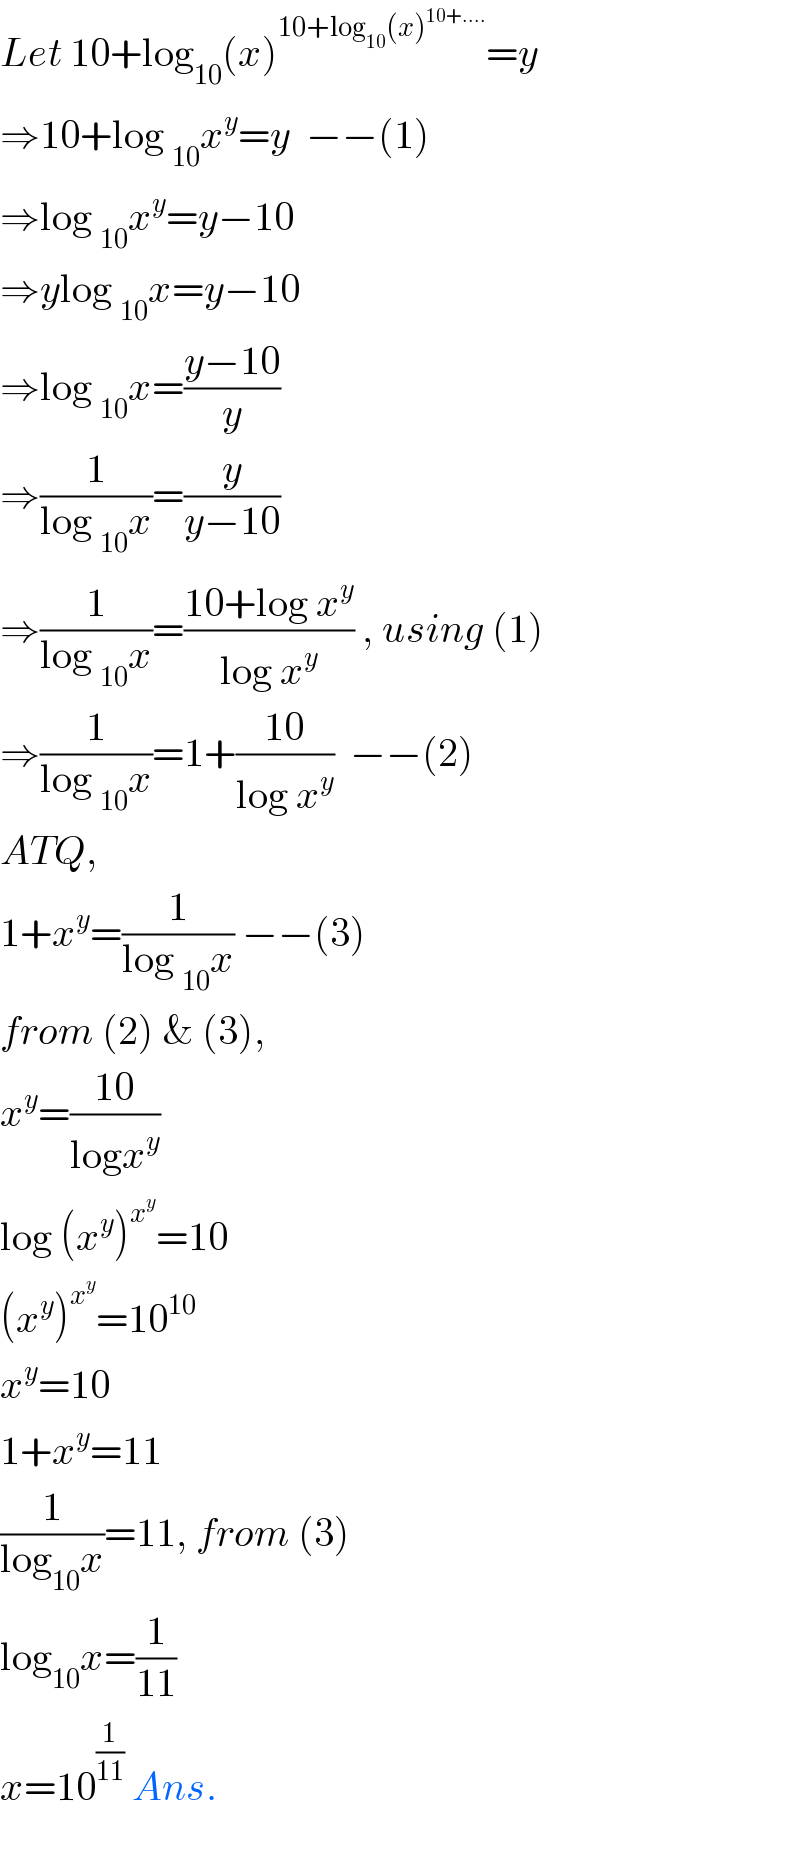 Let 10+log_(10) (x)^(10+log_(10) (x)^(10+....) ) =y  ⇒10+log _(10) x^y =y  −−(1)  ⇒log _(10) x^y =y−10  ⇒ylog _(10) x=y−10  ⇒log _(10) x=((y−10)/y)  ⇒(1/(log _(10) x))=(y/(y−10))  ⇒(1/(log _(10) x))=((10+log x^y )/(log x^y )) , using (1)  ⇒(1/(log _(10) x))=1+((10)/(log x^y ))  −−(2)  ATQ,  1+x^y =(1/(log _(10) x)) −−(3)  from (2) & (3),  x^y =((10)/(logx^y ))  log (x^y )^x^y  =10  (x^y )^x^y  =10^(10)   x^y =10  1+x^y =11  (1/(log_(10) x))=11, from (3)  log_(10) x=(1/(11))  x=10^(1/(11))  Ans.    